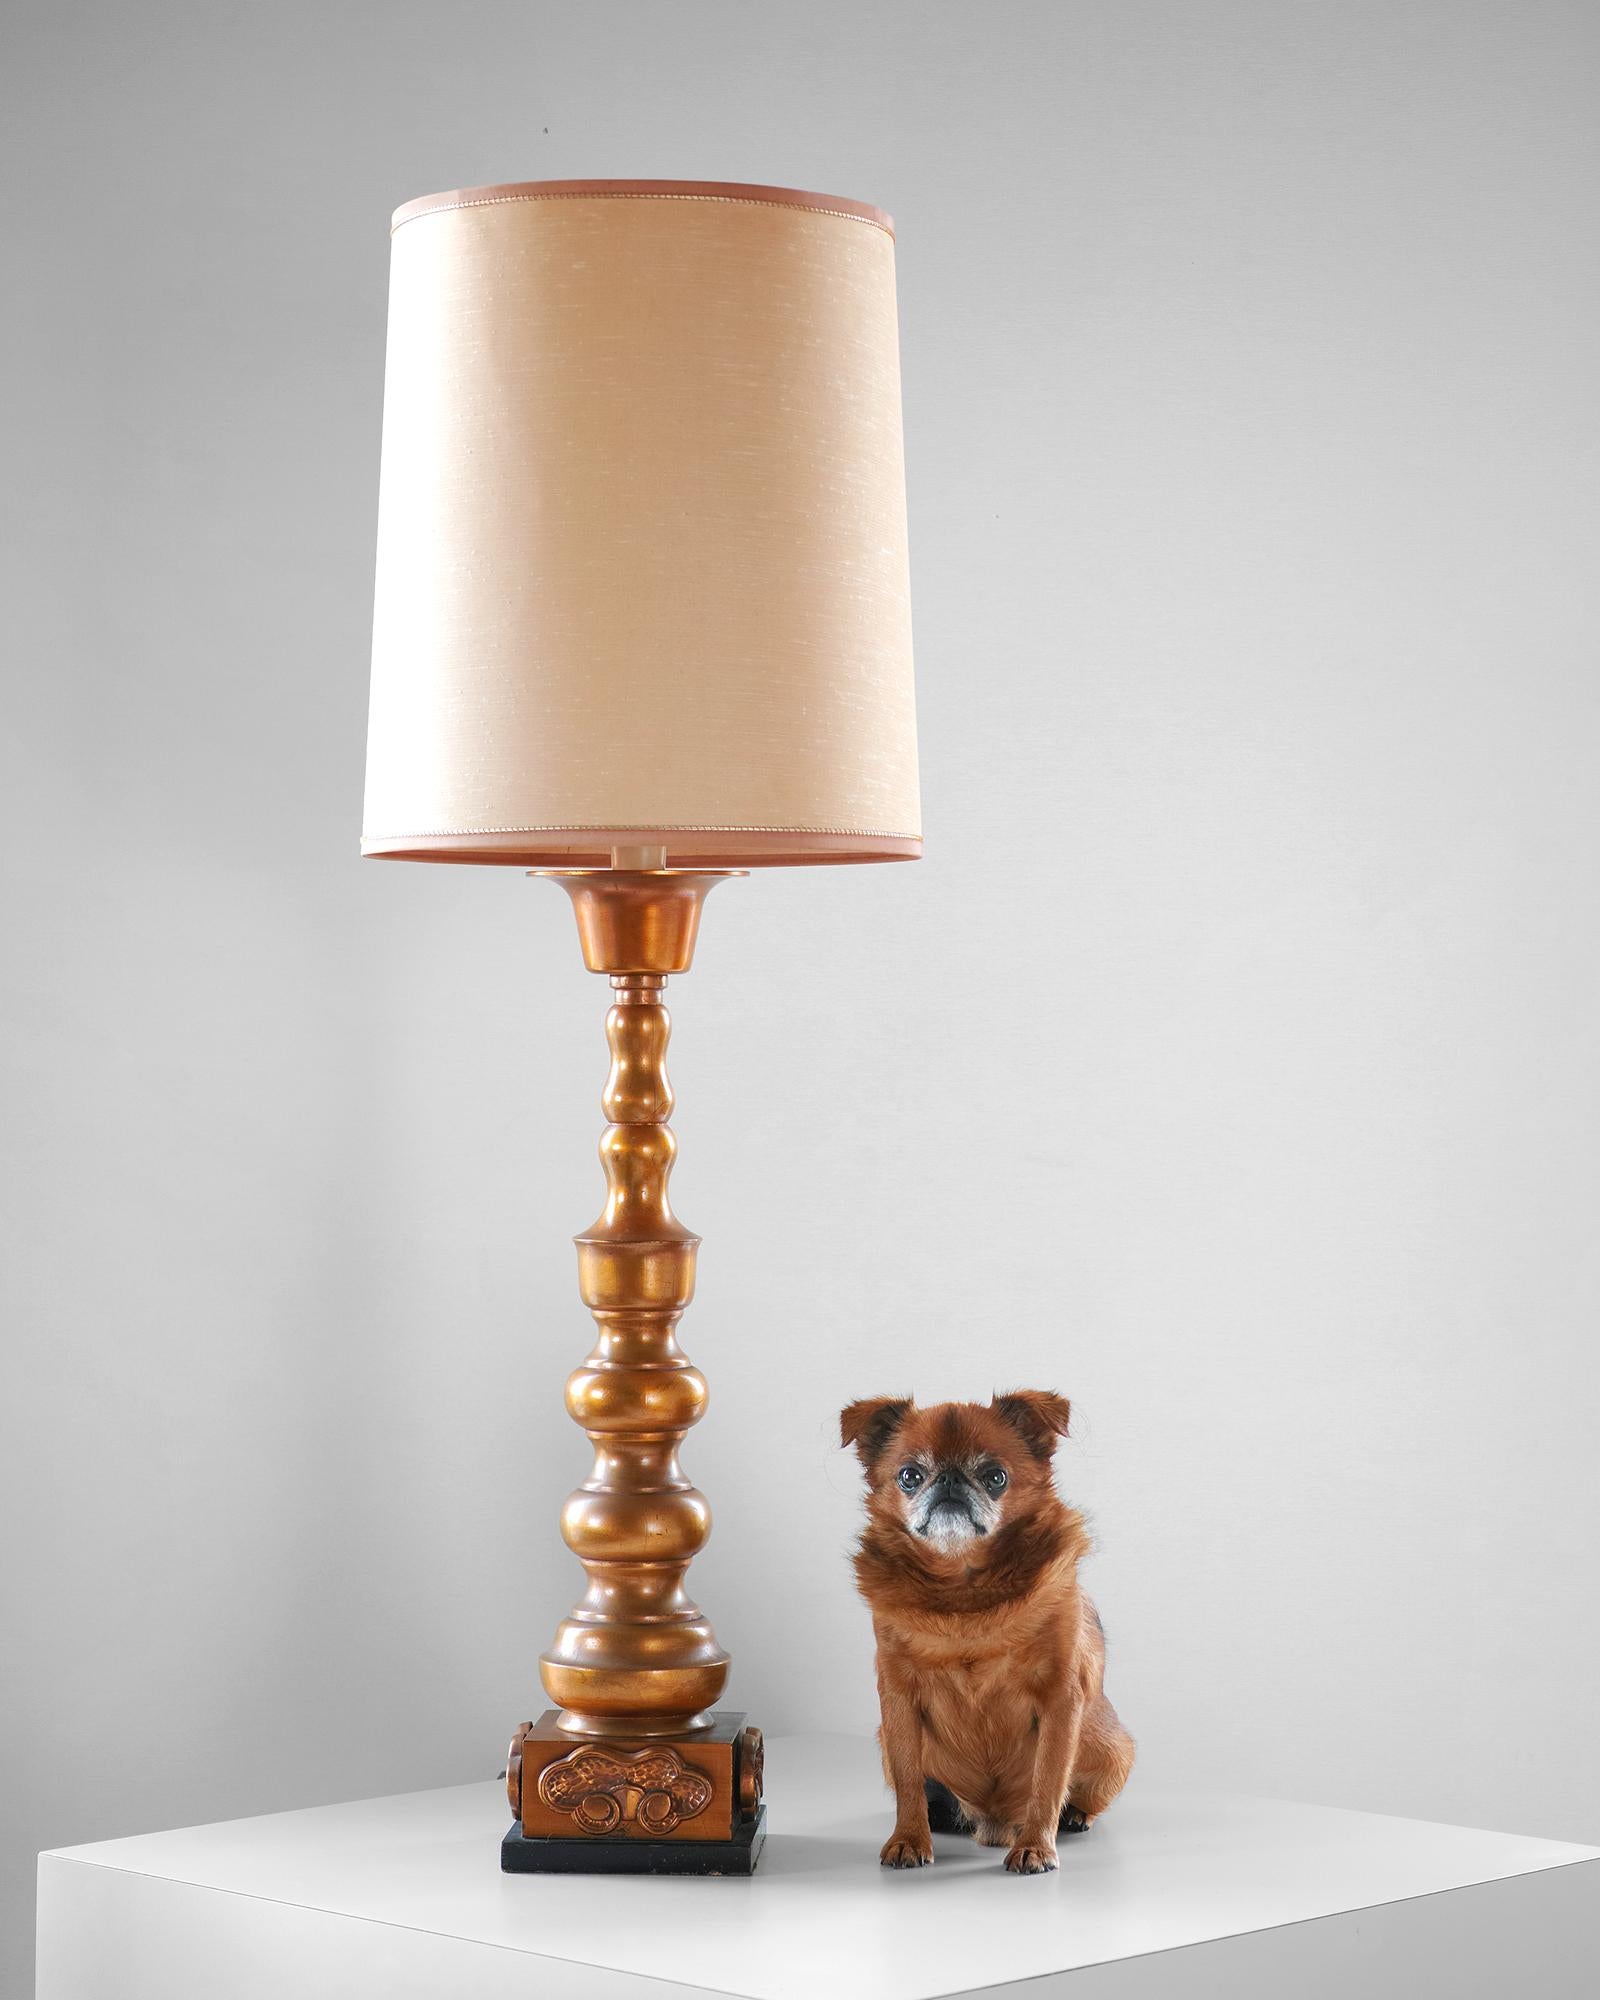 Nous vous proposons cette lampe Chinoiserie dorée de Marbro fabriquée dans les années 1960. L'abat-jour est en tissu, la base est de forme balustre et la finition est dorée. Au sommet du balustre se trouve un élément contrastant, évasé, de couleur